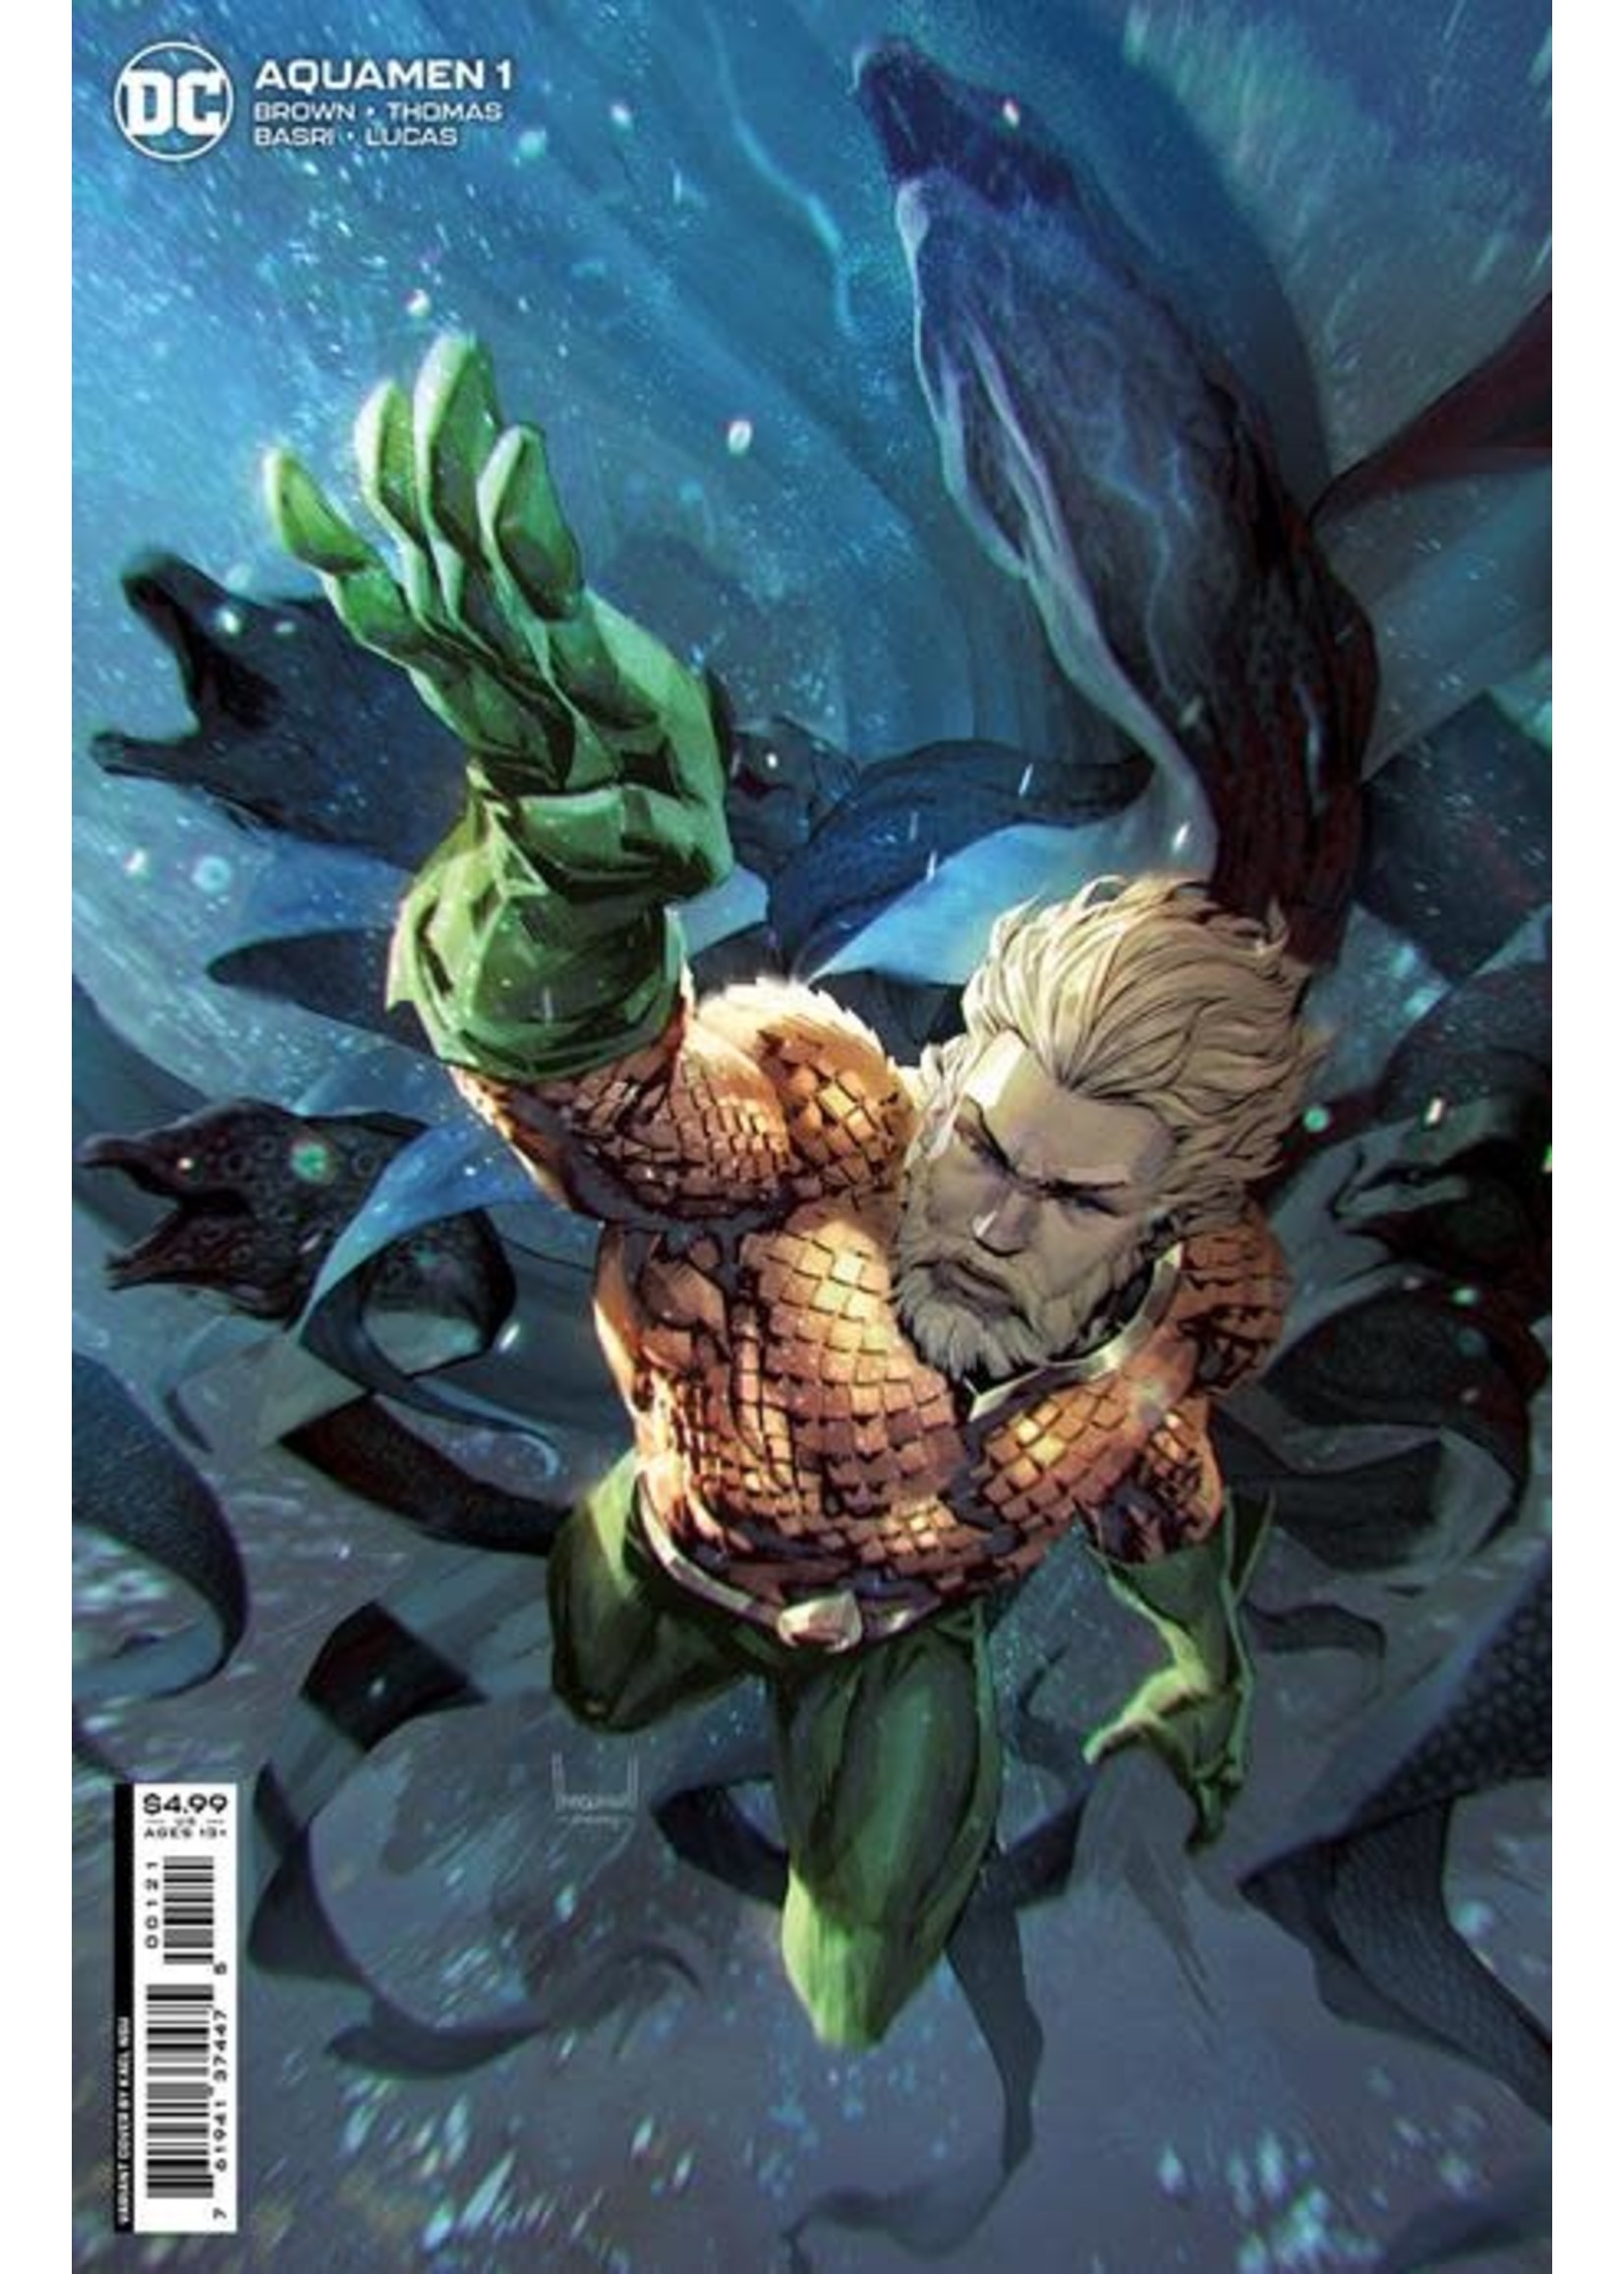 Aquamen #01